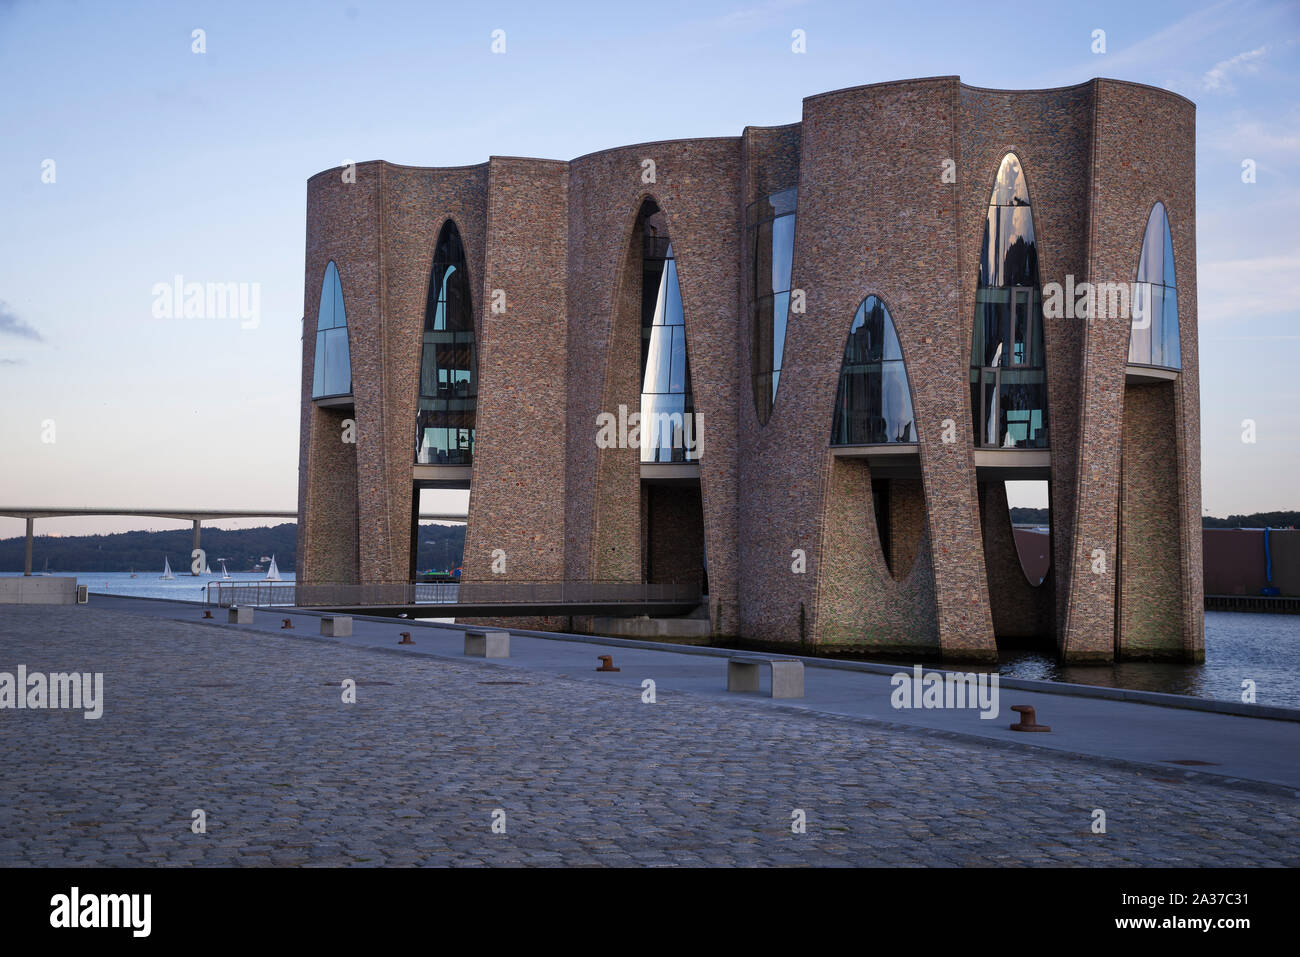 Fjordenhus, moderne Architektur an der Hafenfront  in Vejle, Dänemark, Europa Stock Photo